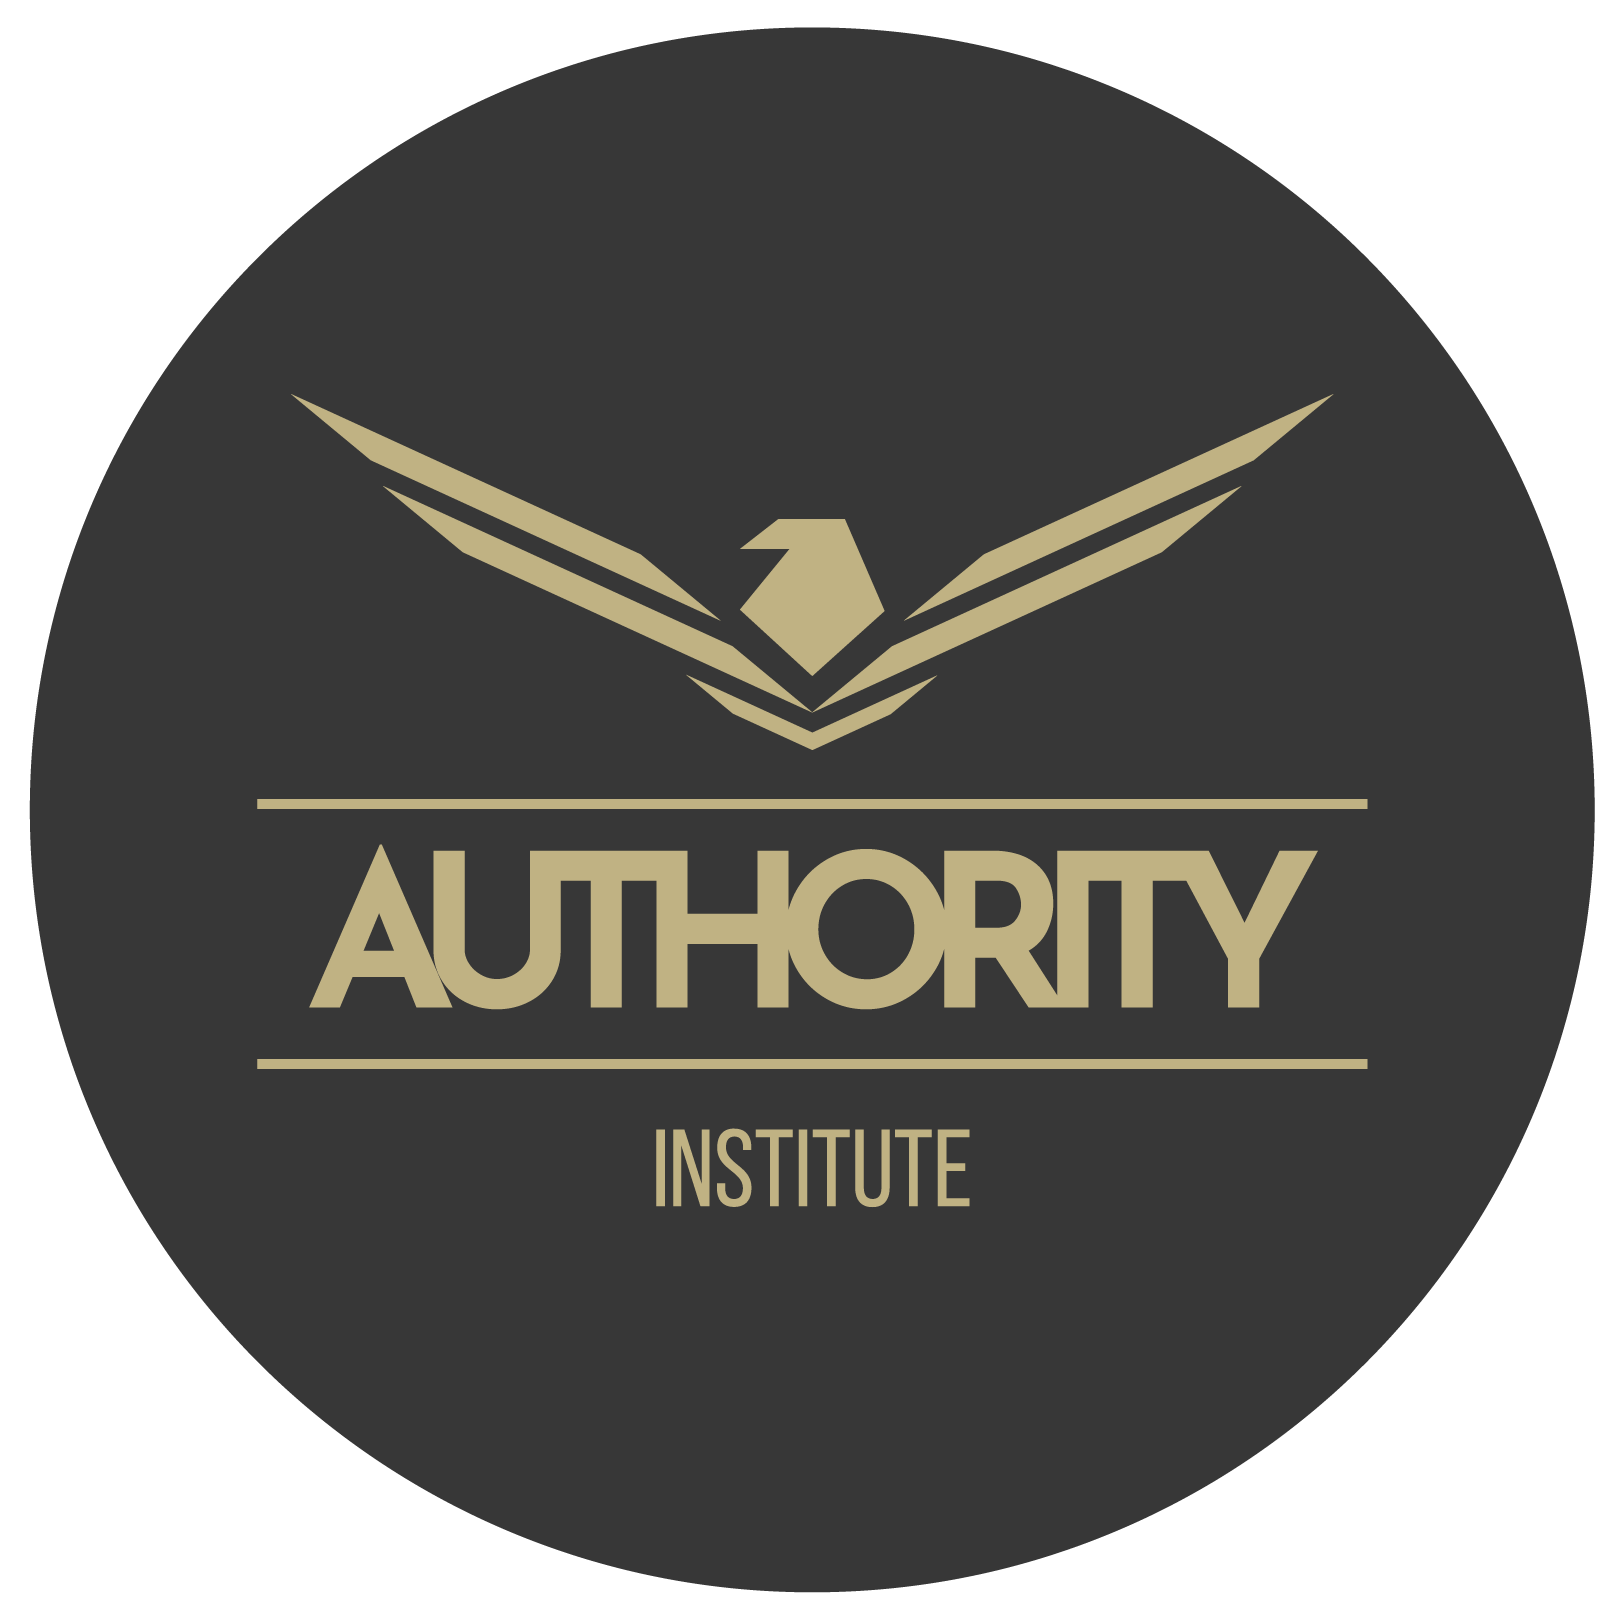 Authority Institute